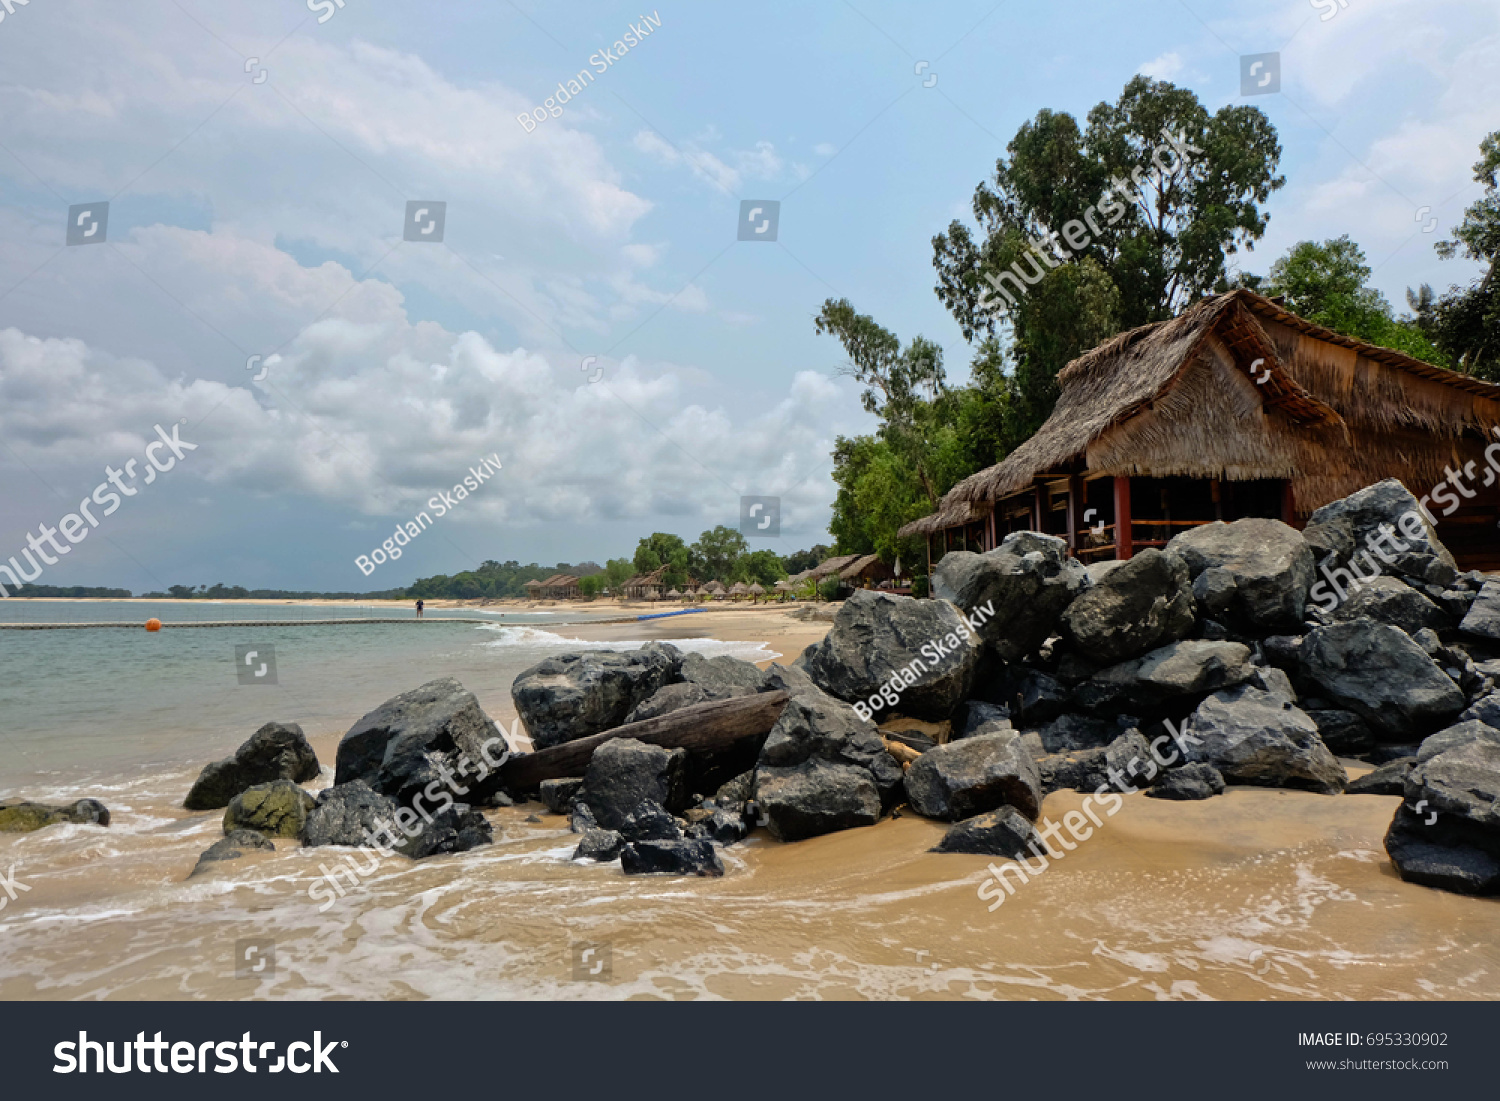 Beach rest in Gabon #695330902